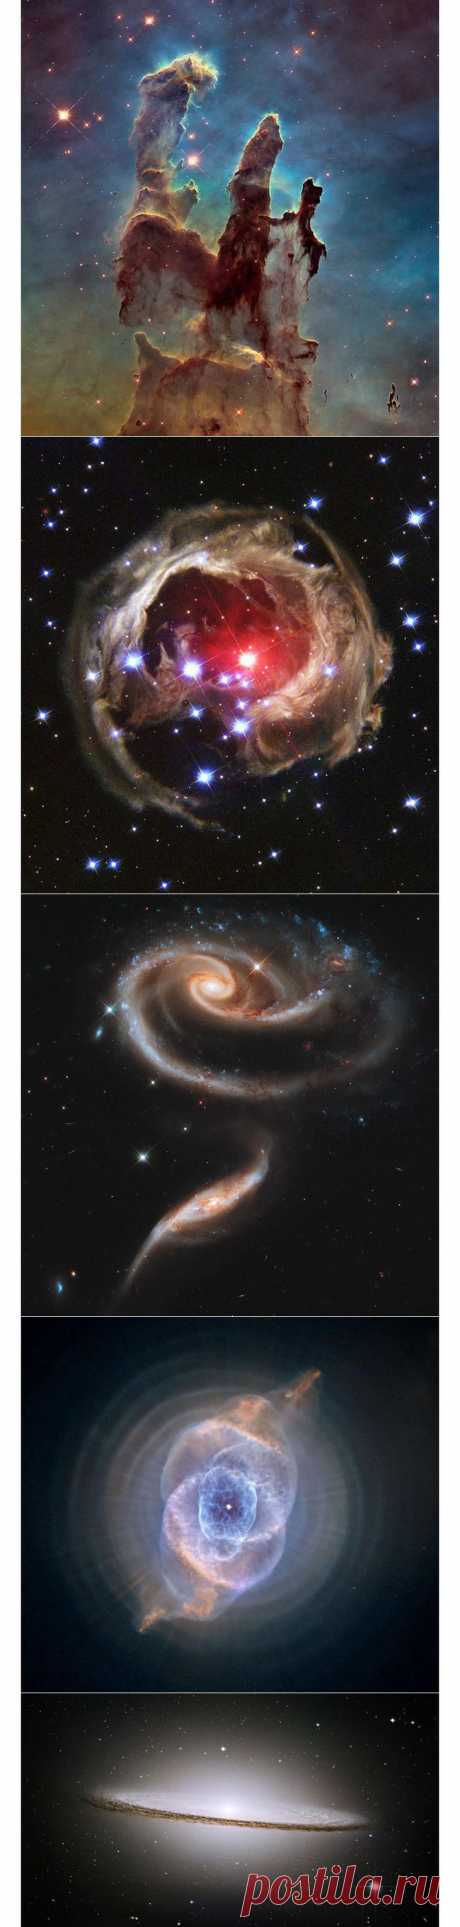 Лучшие фотографии «Хаббла»: результаты голосования к 25-летию телескопа